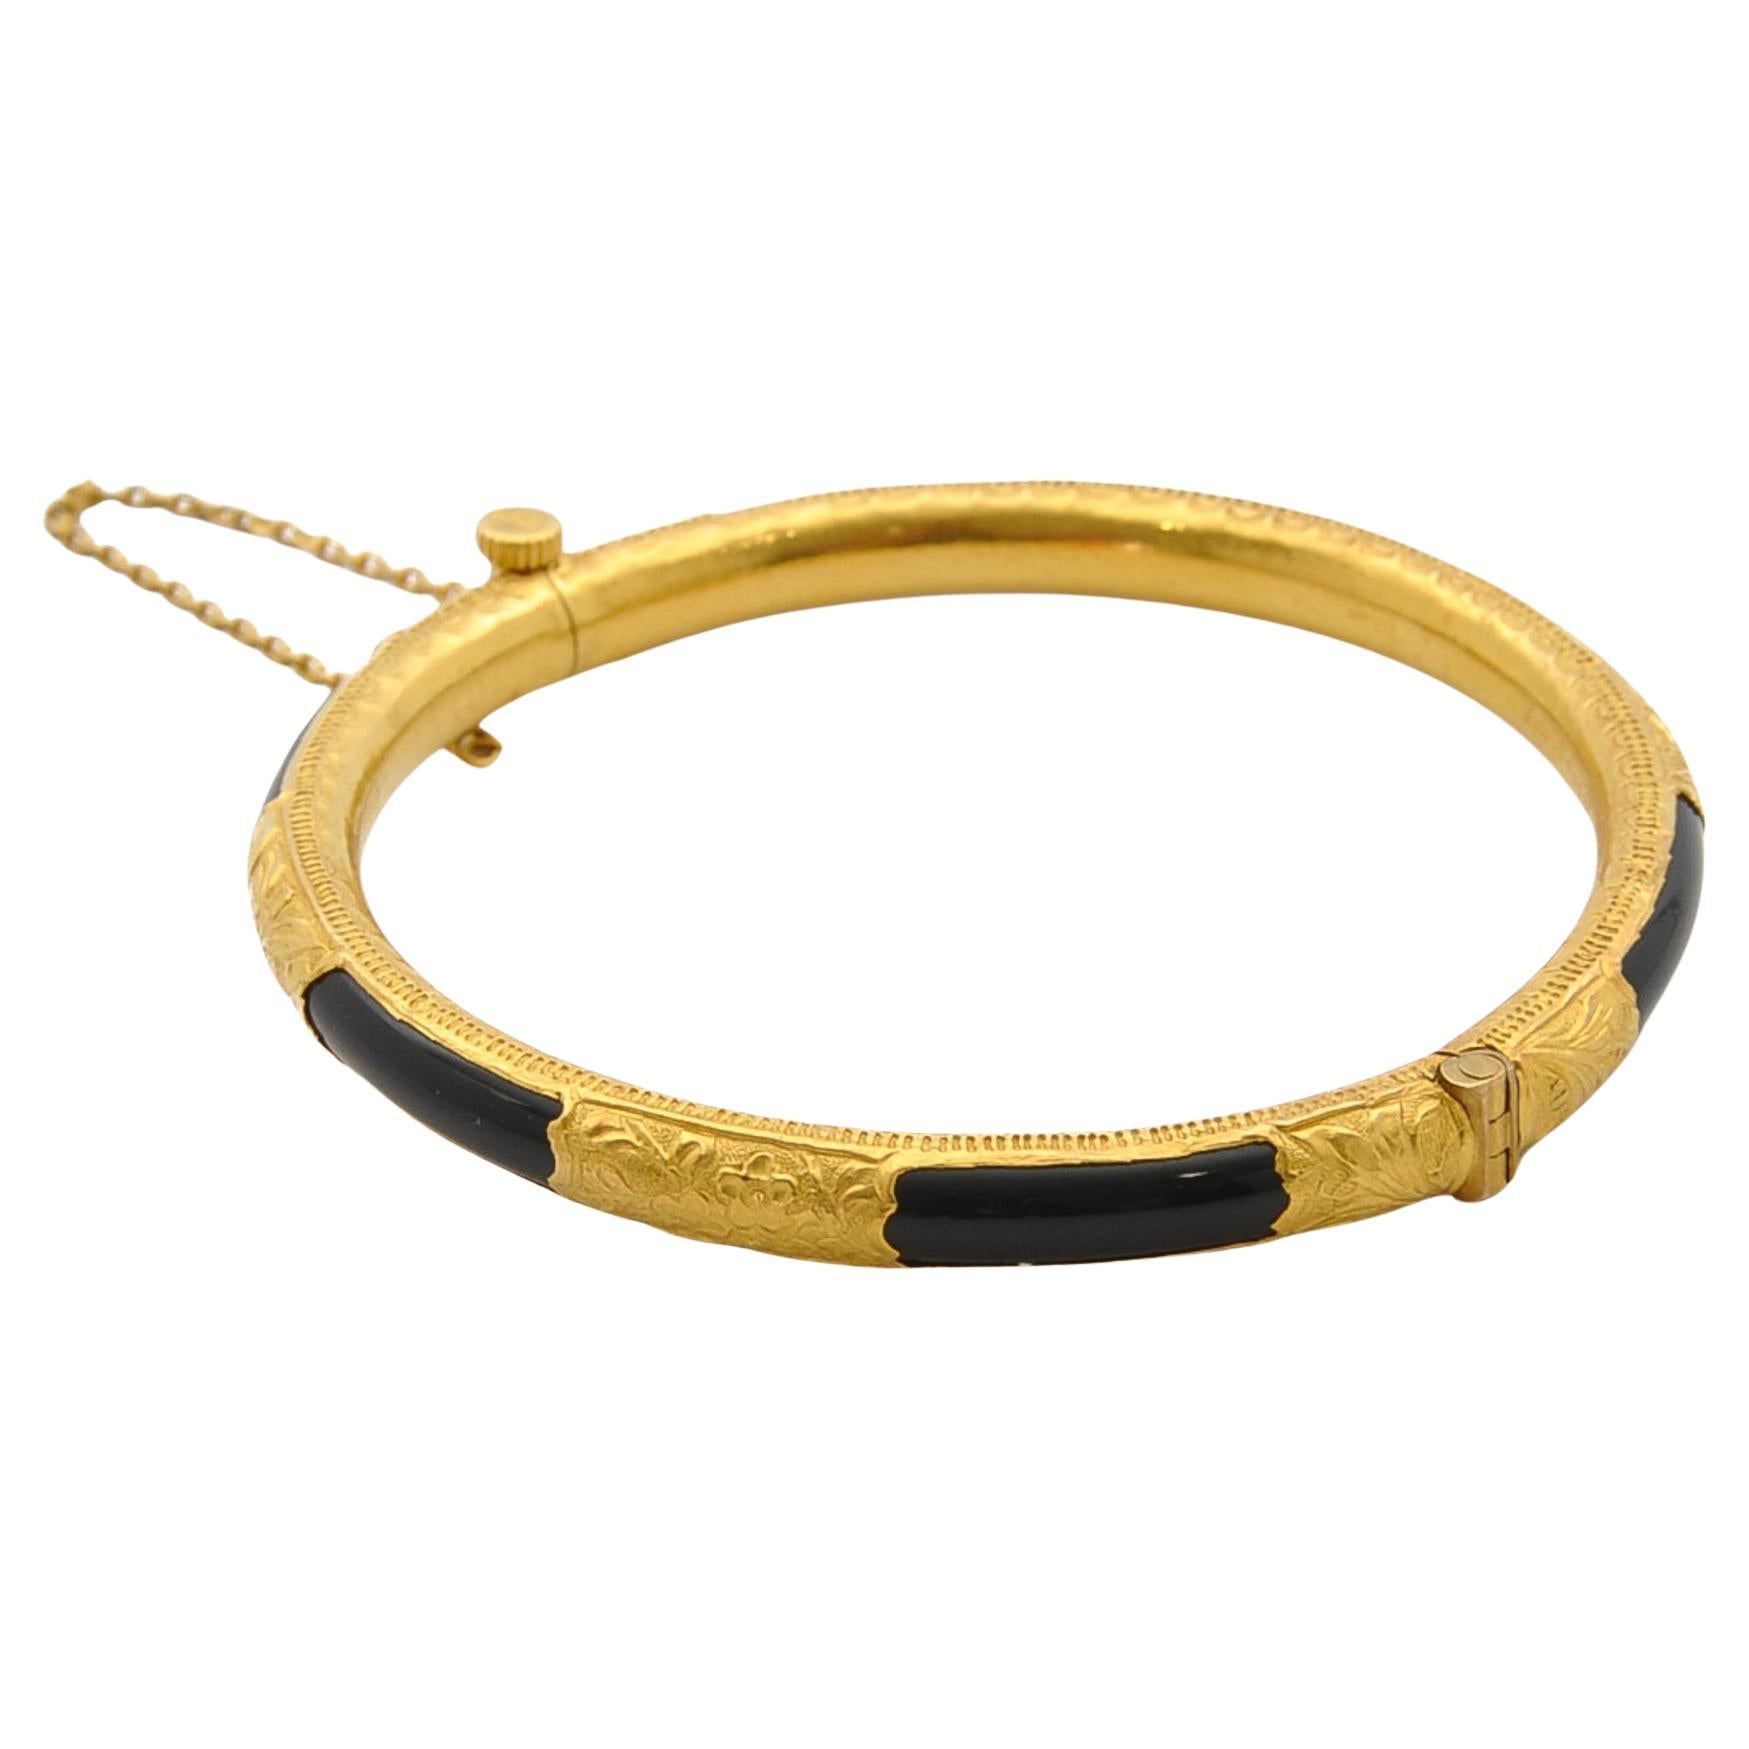 Onyx and 20K Gold Engraved Rigid Hinged Bangle Bracelet